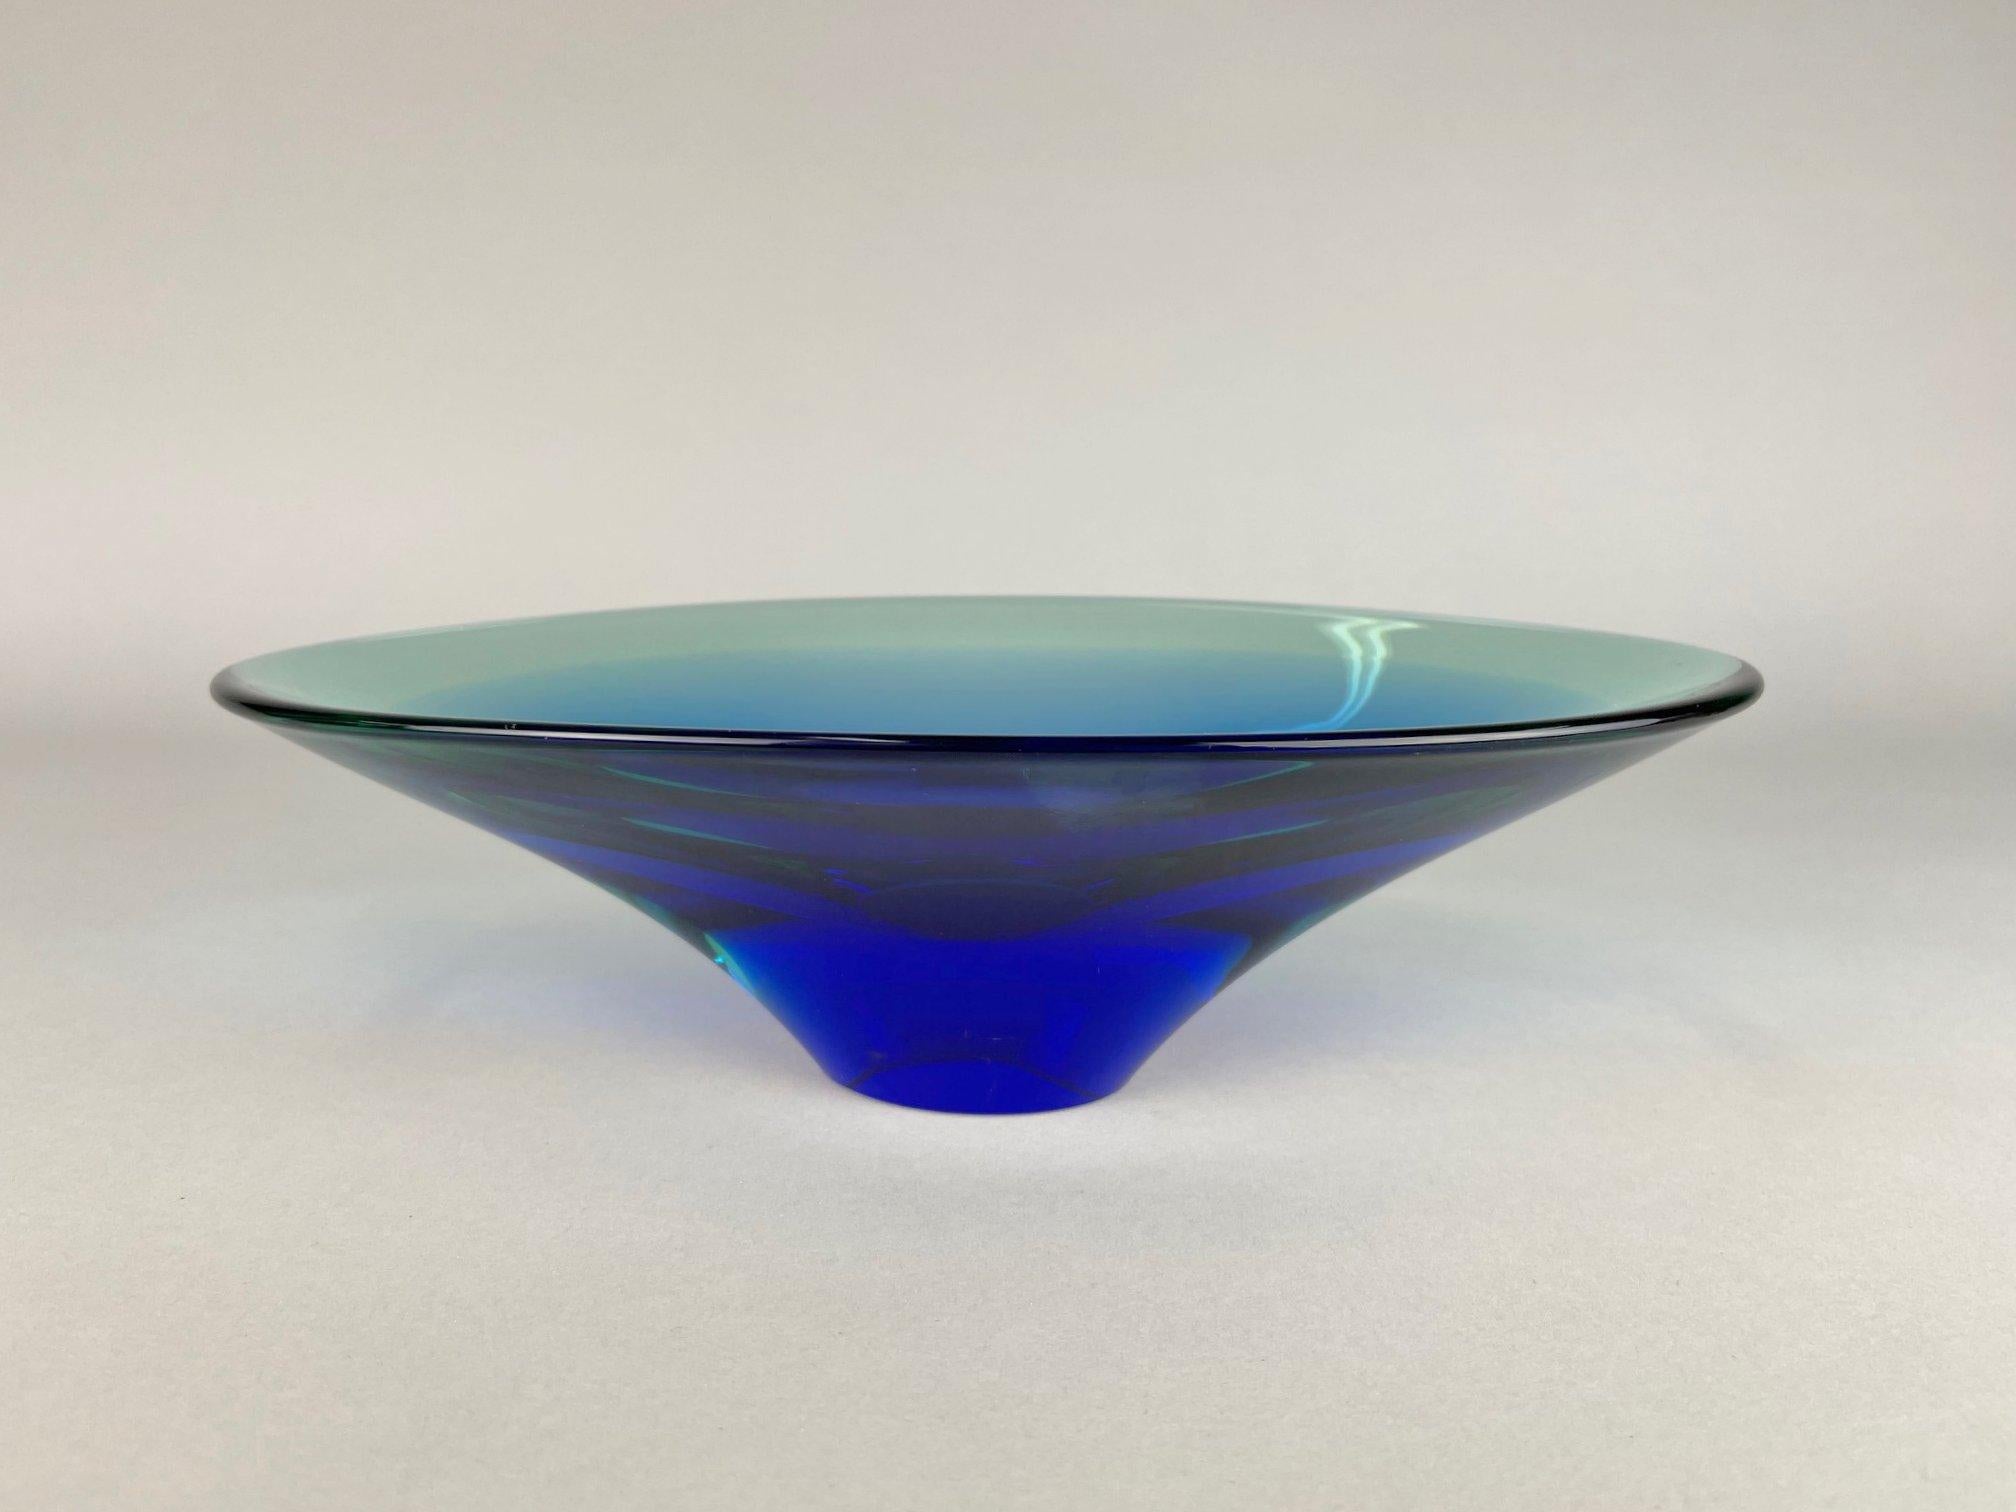 Magnifique bol en verre d'art conçu par l'artiste verrier Miloslav Klinger pour Zelezny Brod Glassworks (ZBS) en Tchécoslovaquie dans les années 1960.